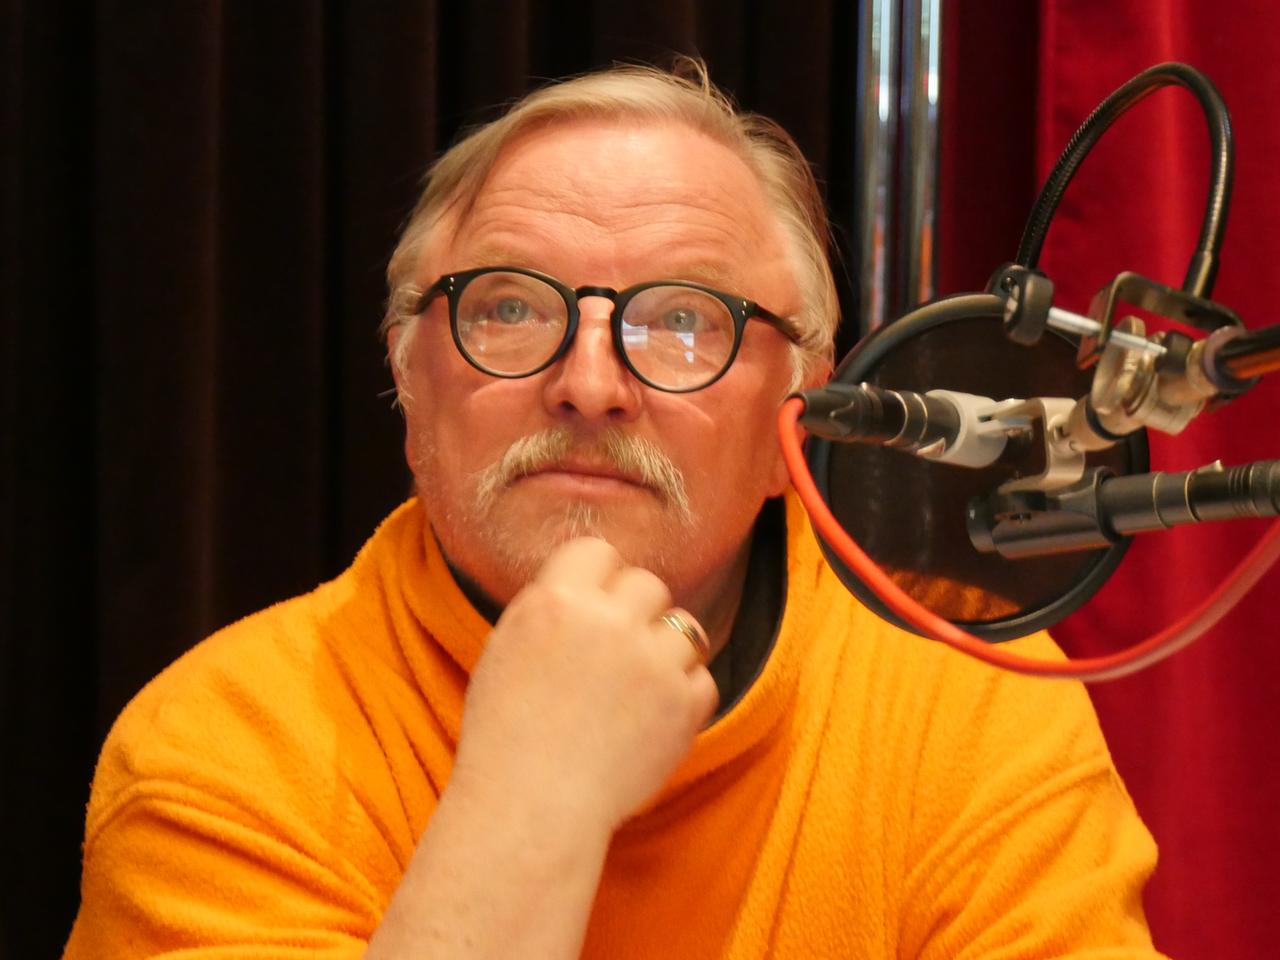 Der Schauspieler Axel Prahl bei den Aufnahmen für das Hörspiel "Zärtlichkeiten".